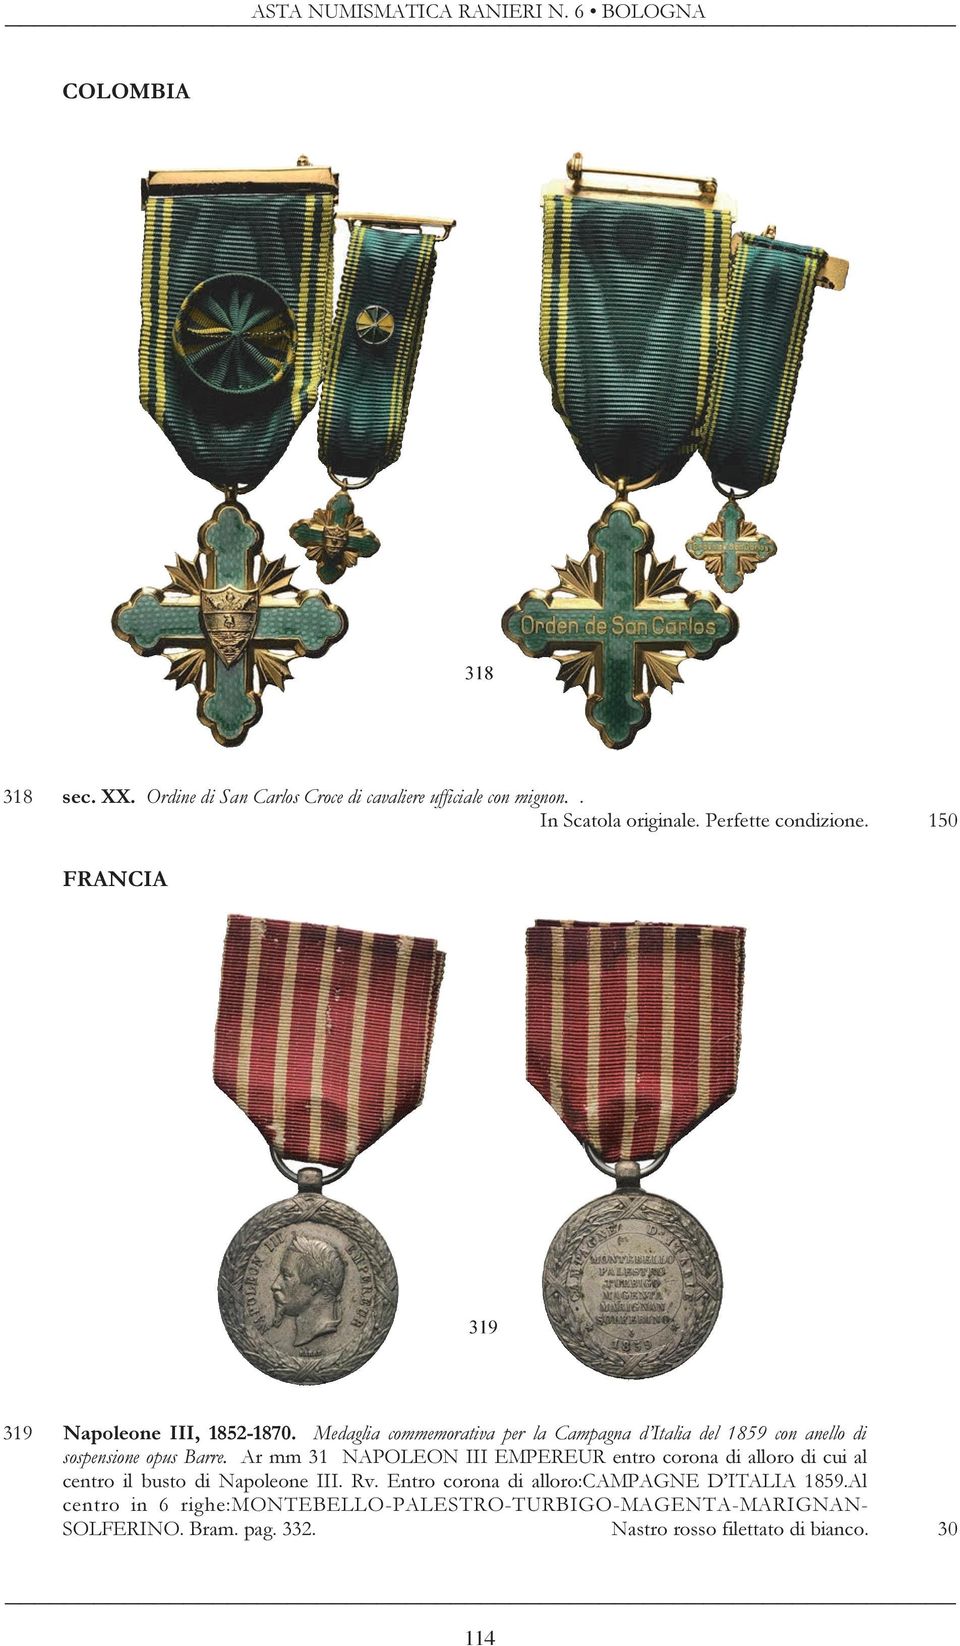 Medaglia commemorativa per la Campagna d Italia del 1859 con anello di sospensione opus Barre.